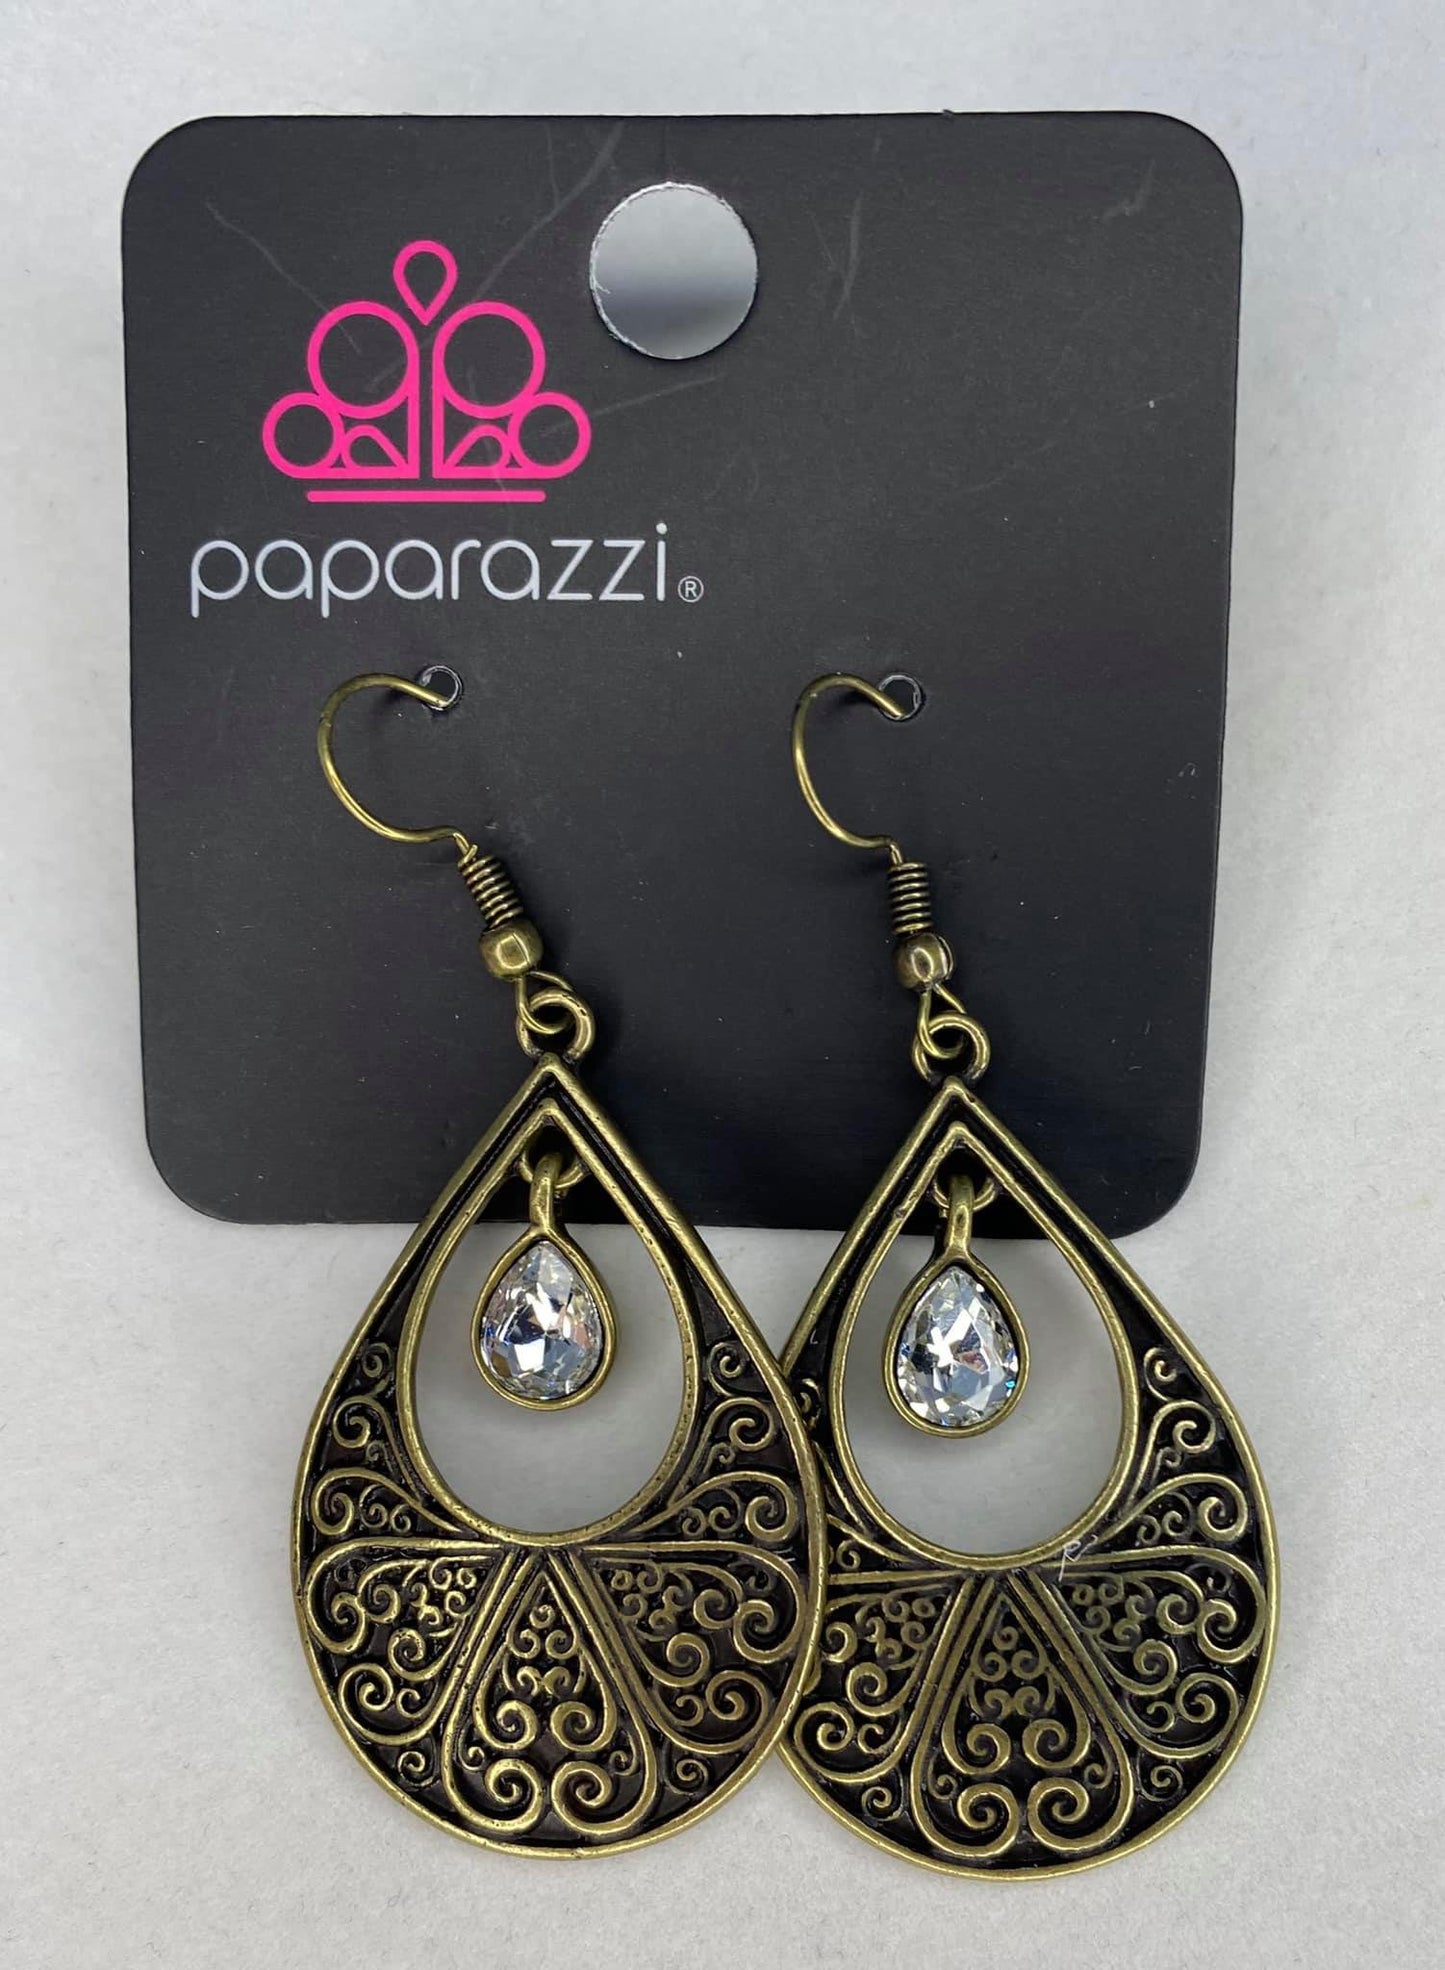 Paparazzi Garden Magic Brass Fishhook Earrings - Fashion Fix Exclusive January 2021